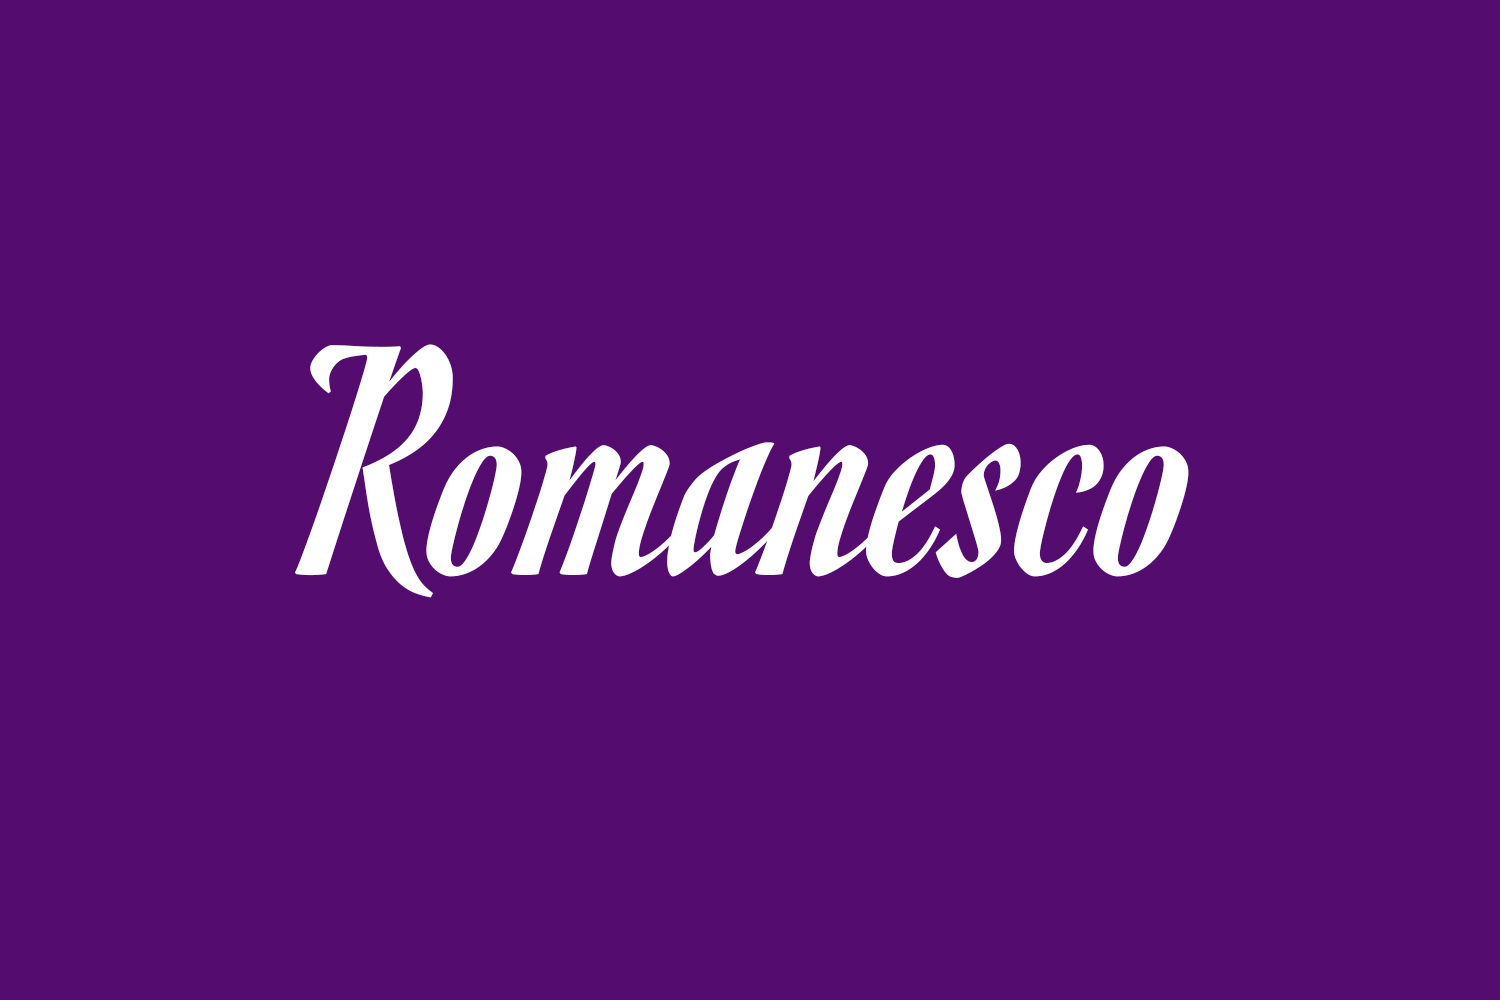 Romanesco